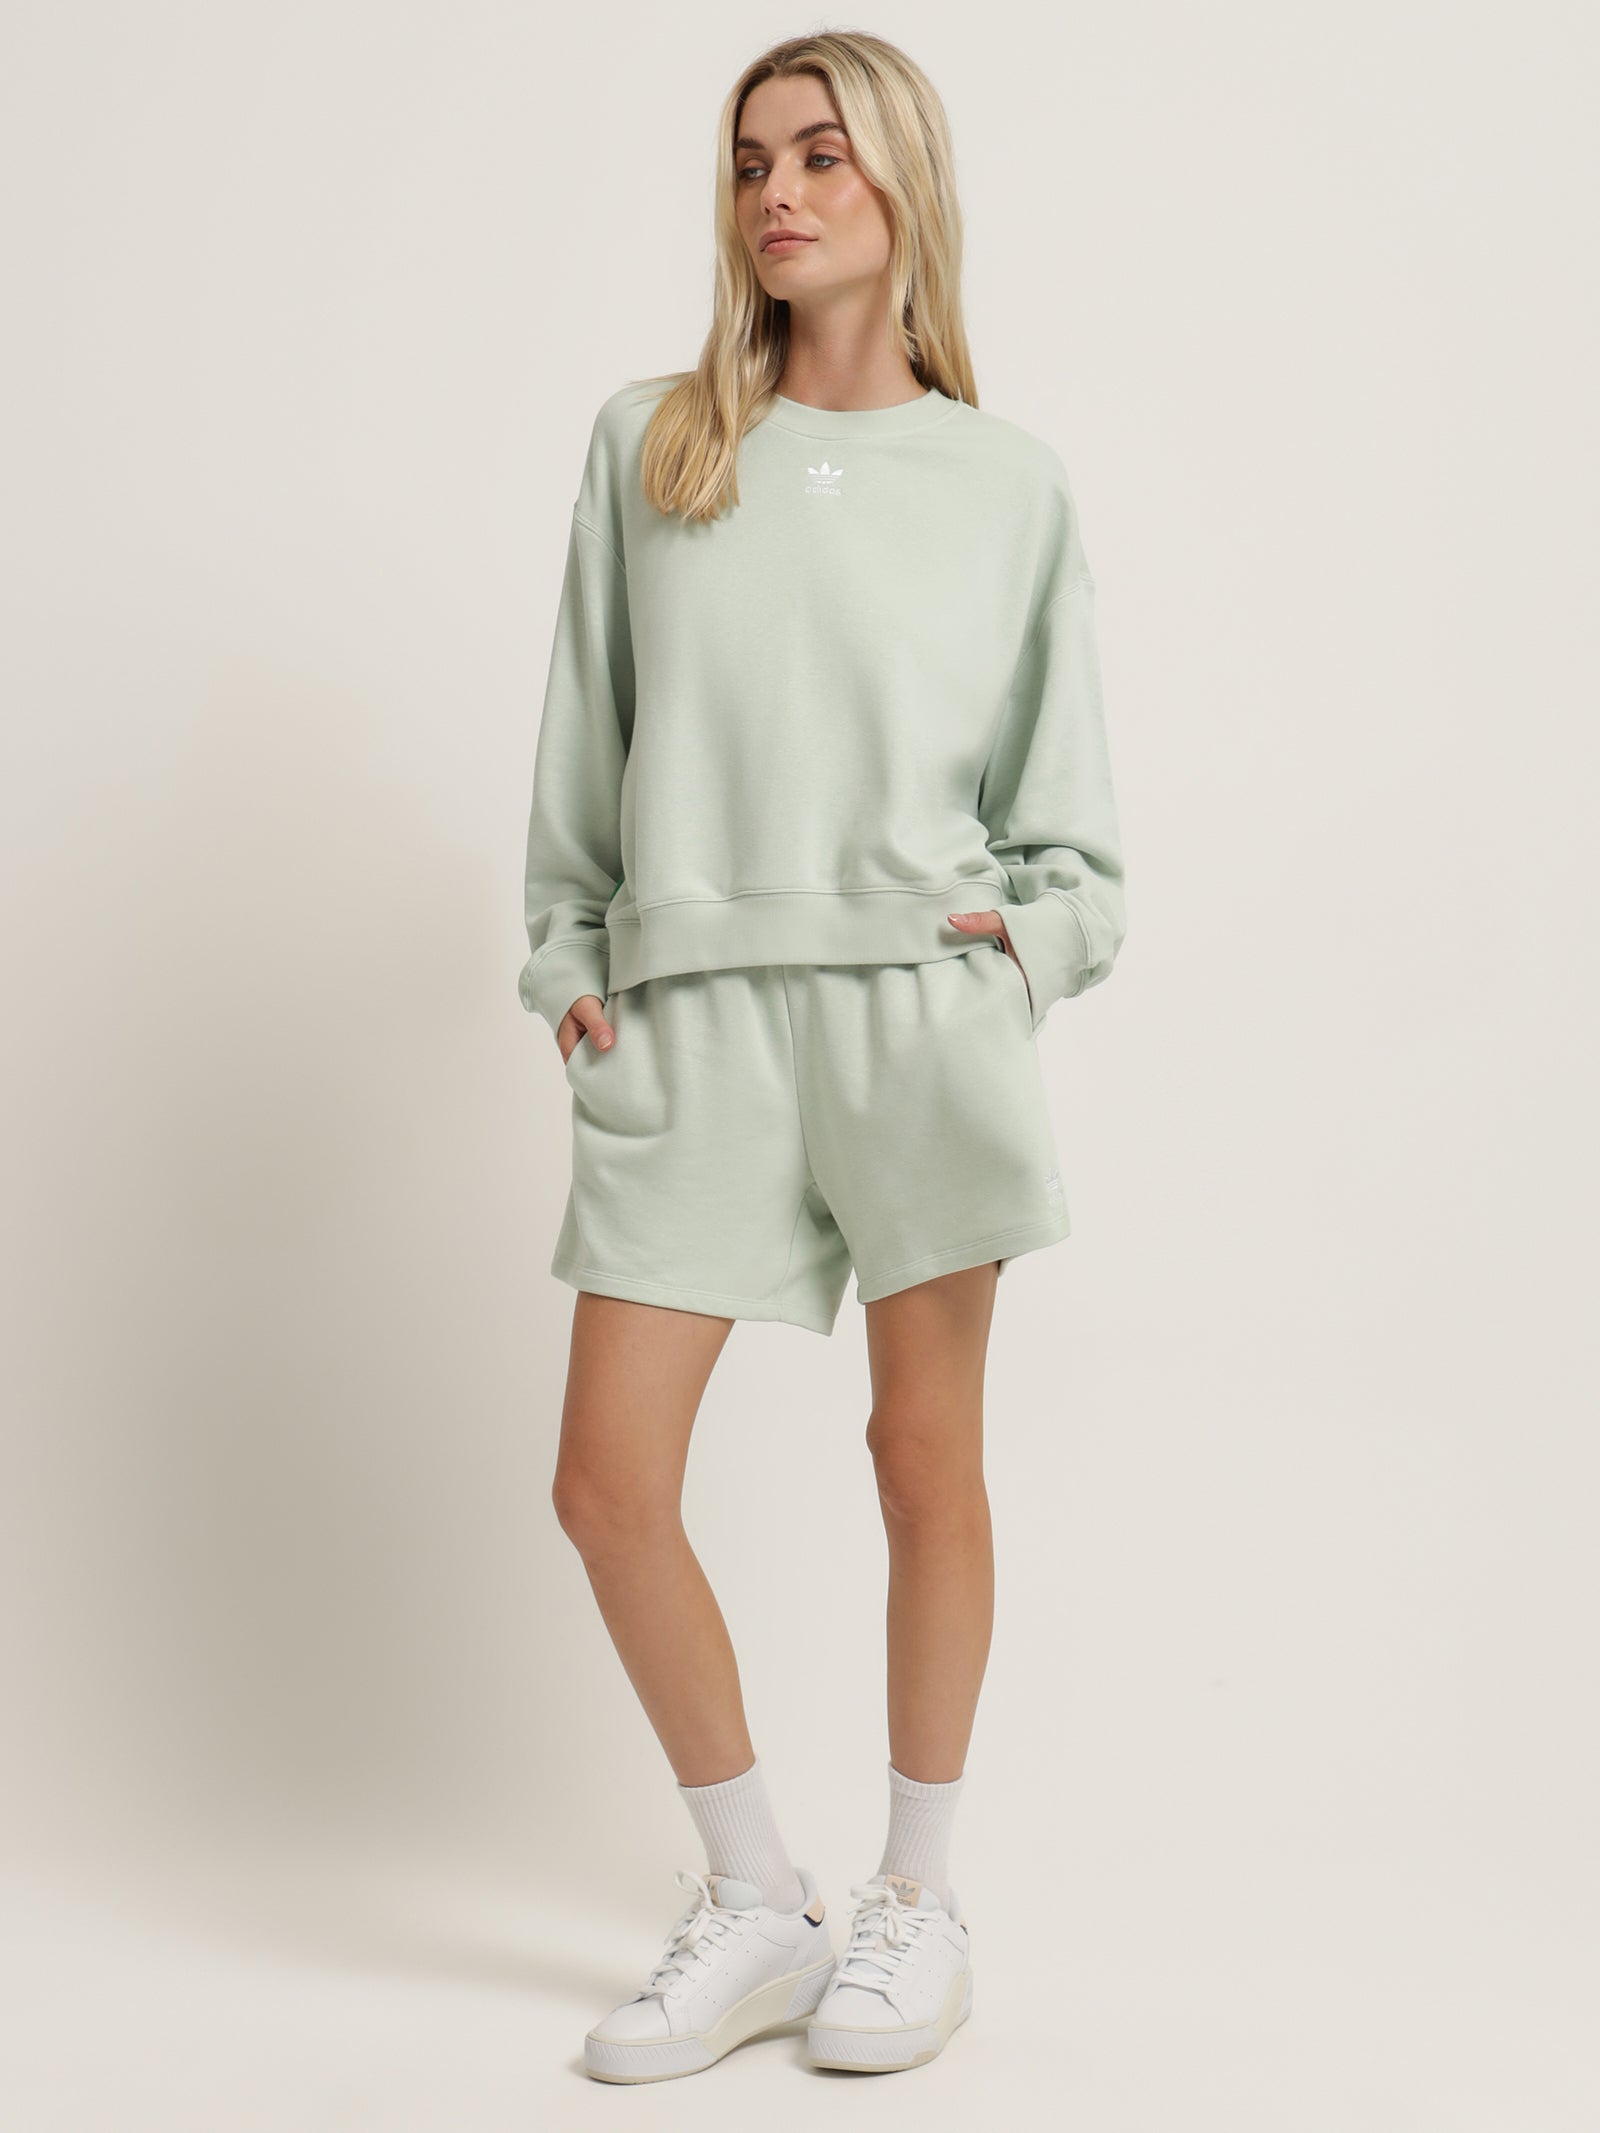 Essentials + Made With Hemp in - Linen Store Glue Green Sweatshirt